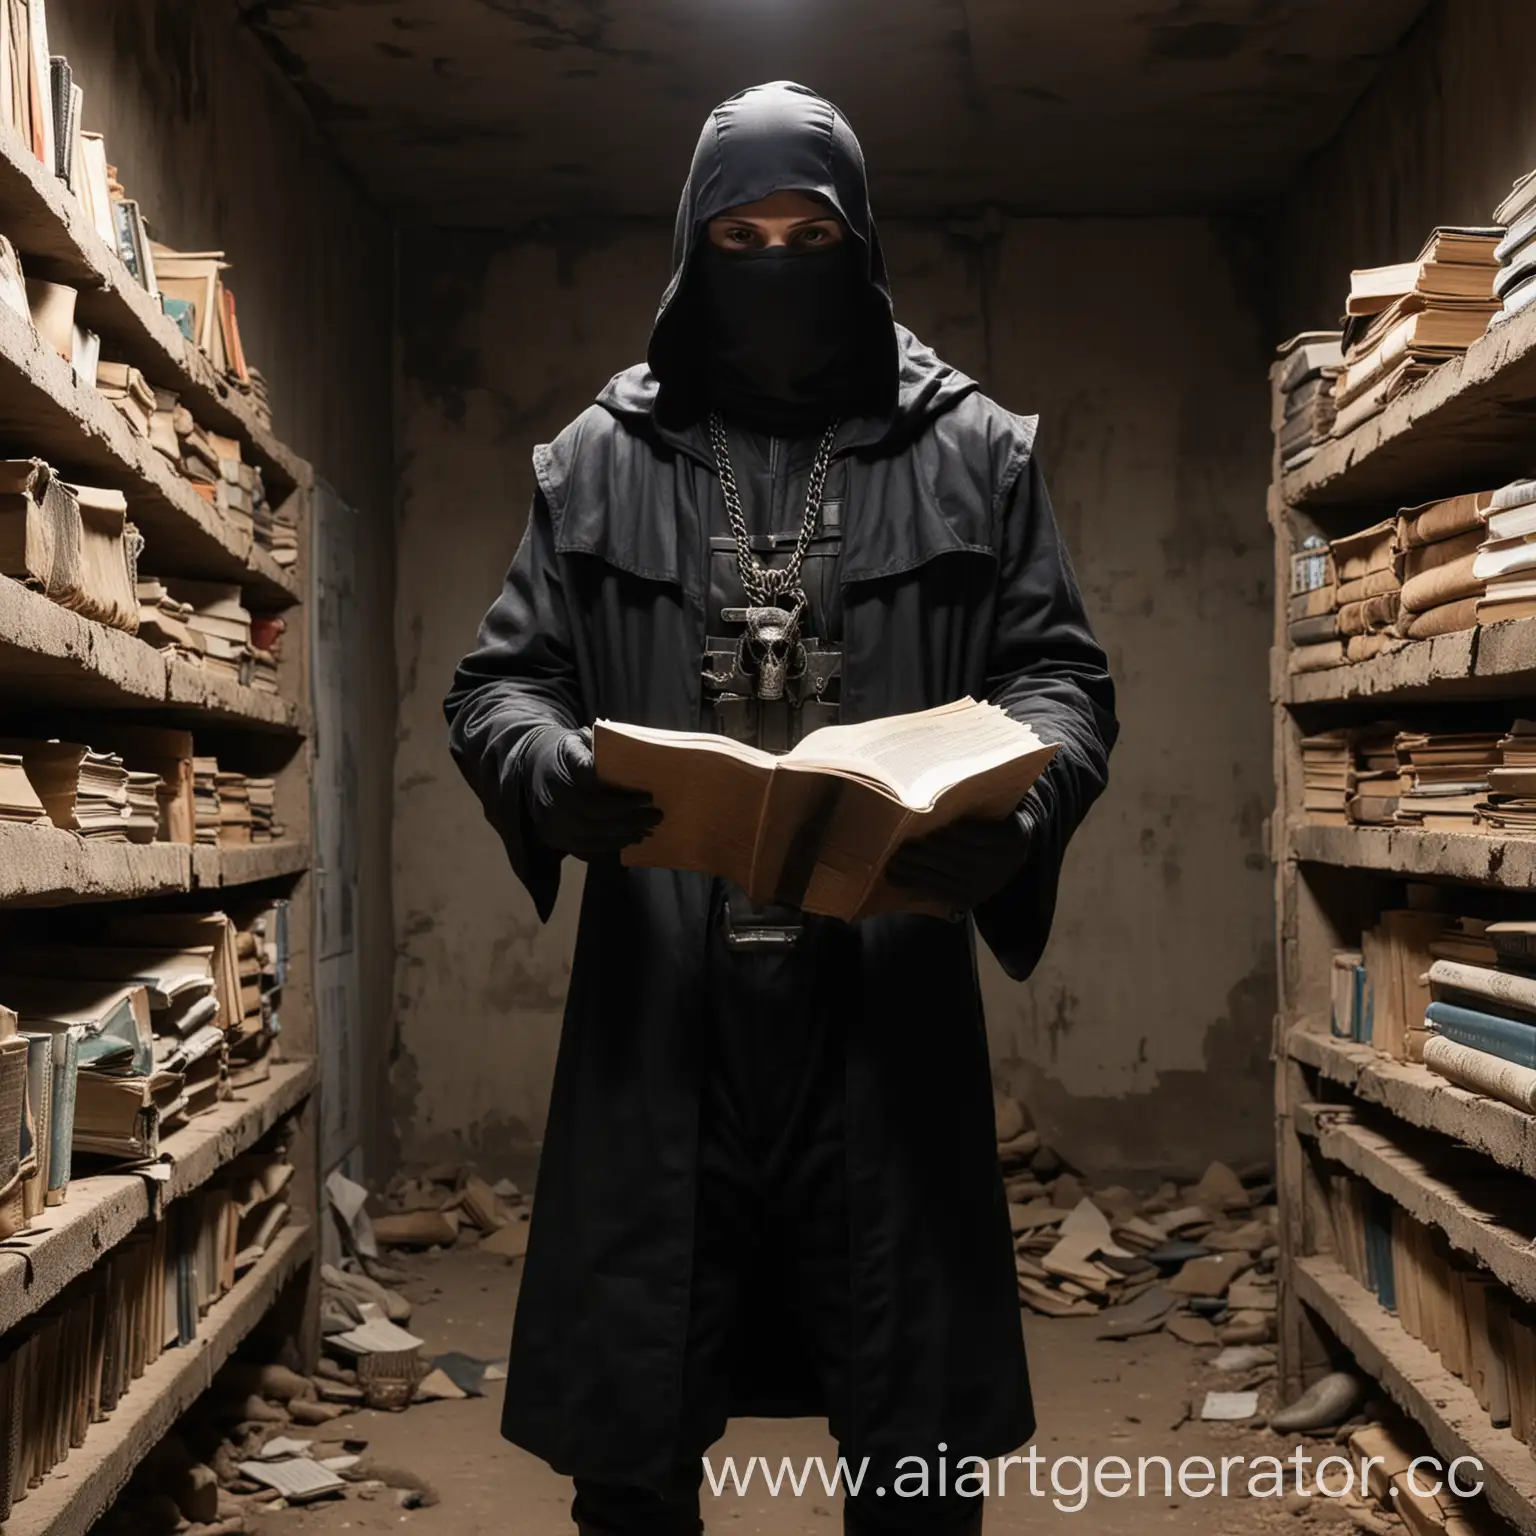 сталкер Кхорнит одетый в черный плащ и балаклаве, стоя в бункере держит книгу в одной руке и читает ее